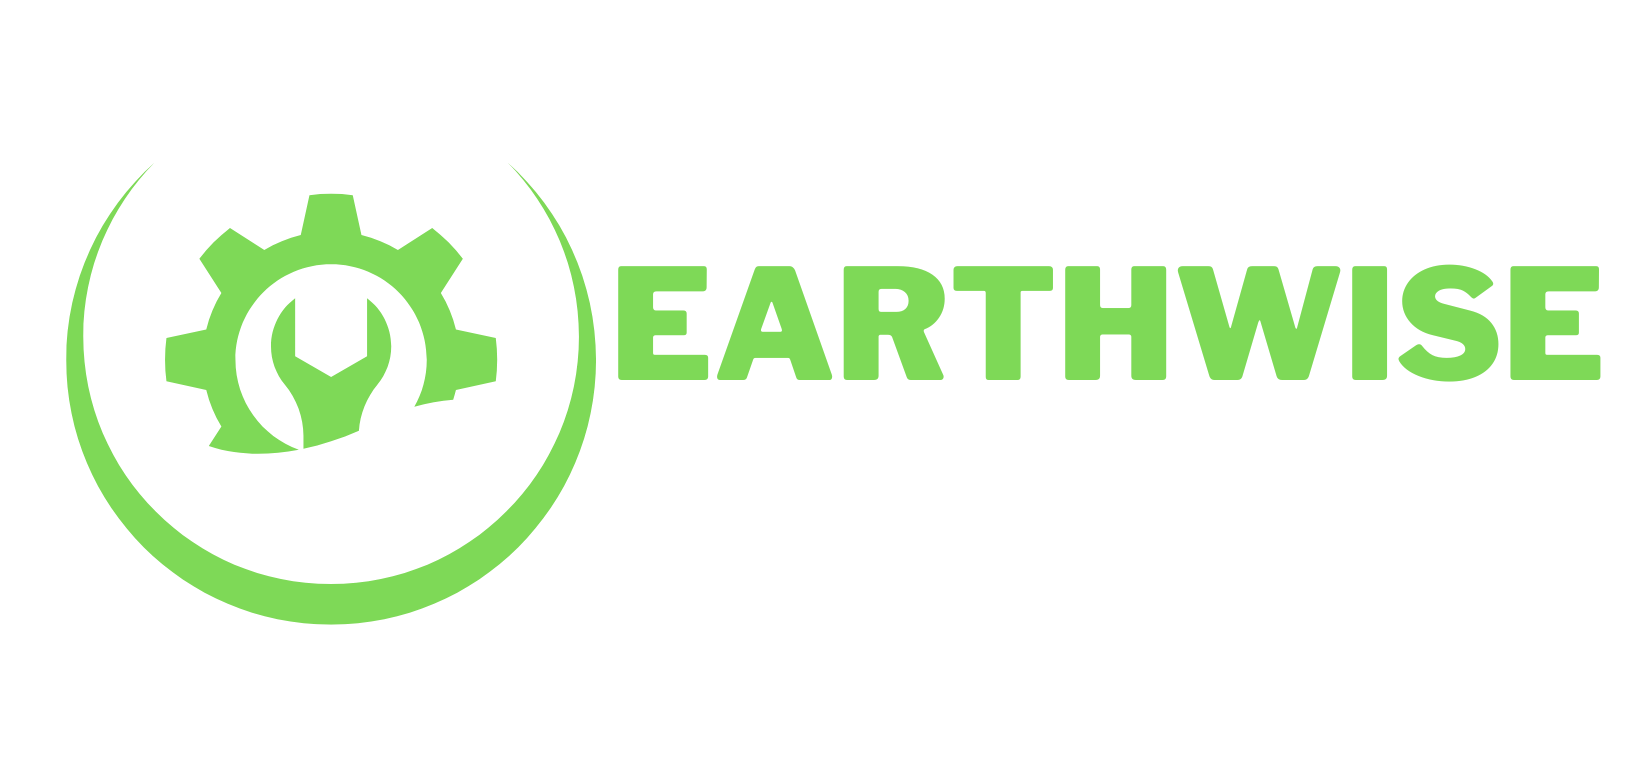 Earthwise Plumbing Logo